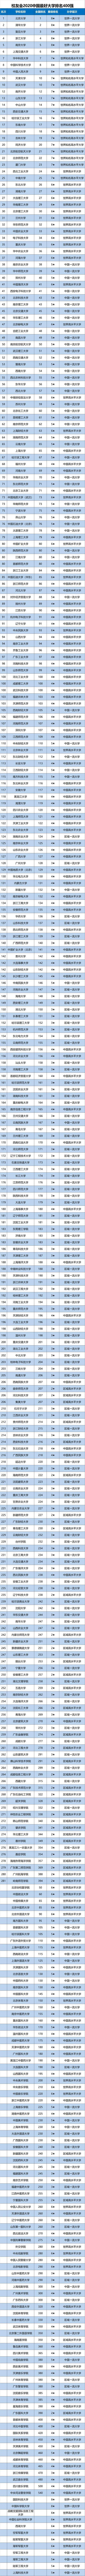 学校排名2020最新排名_2020年中国非双一流高校排名:103所高校上榜,大连大学